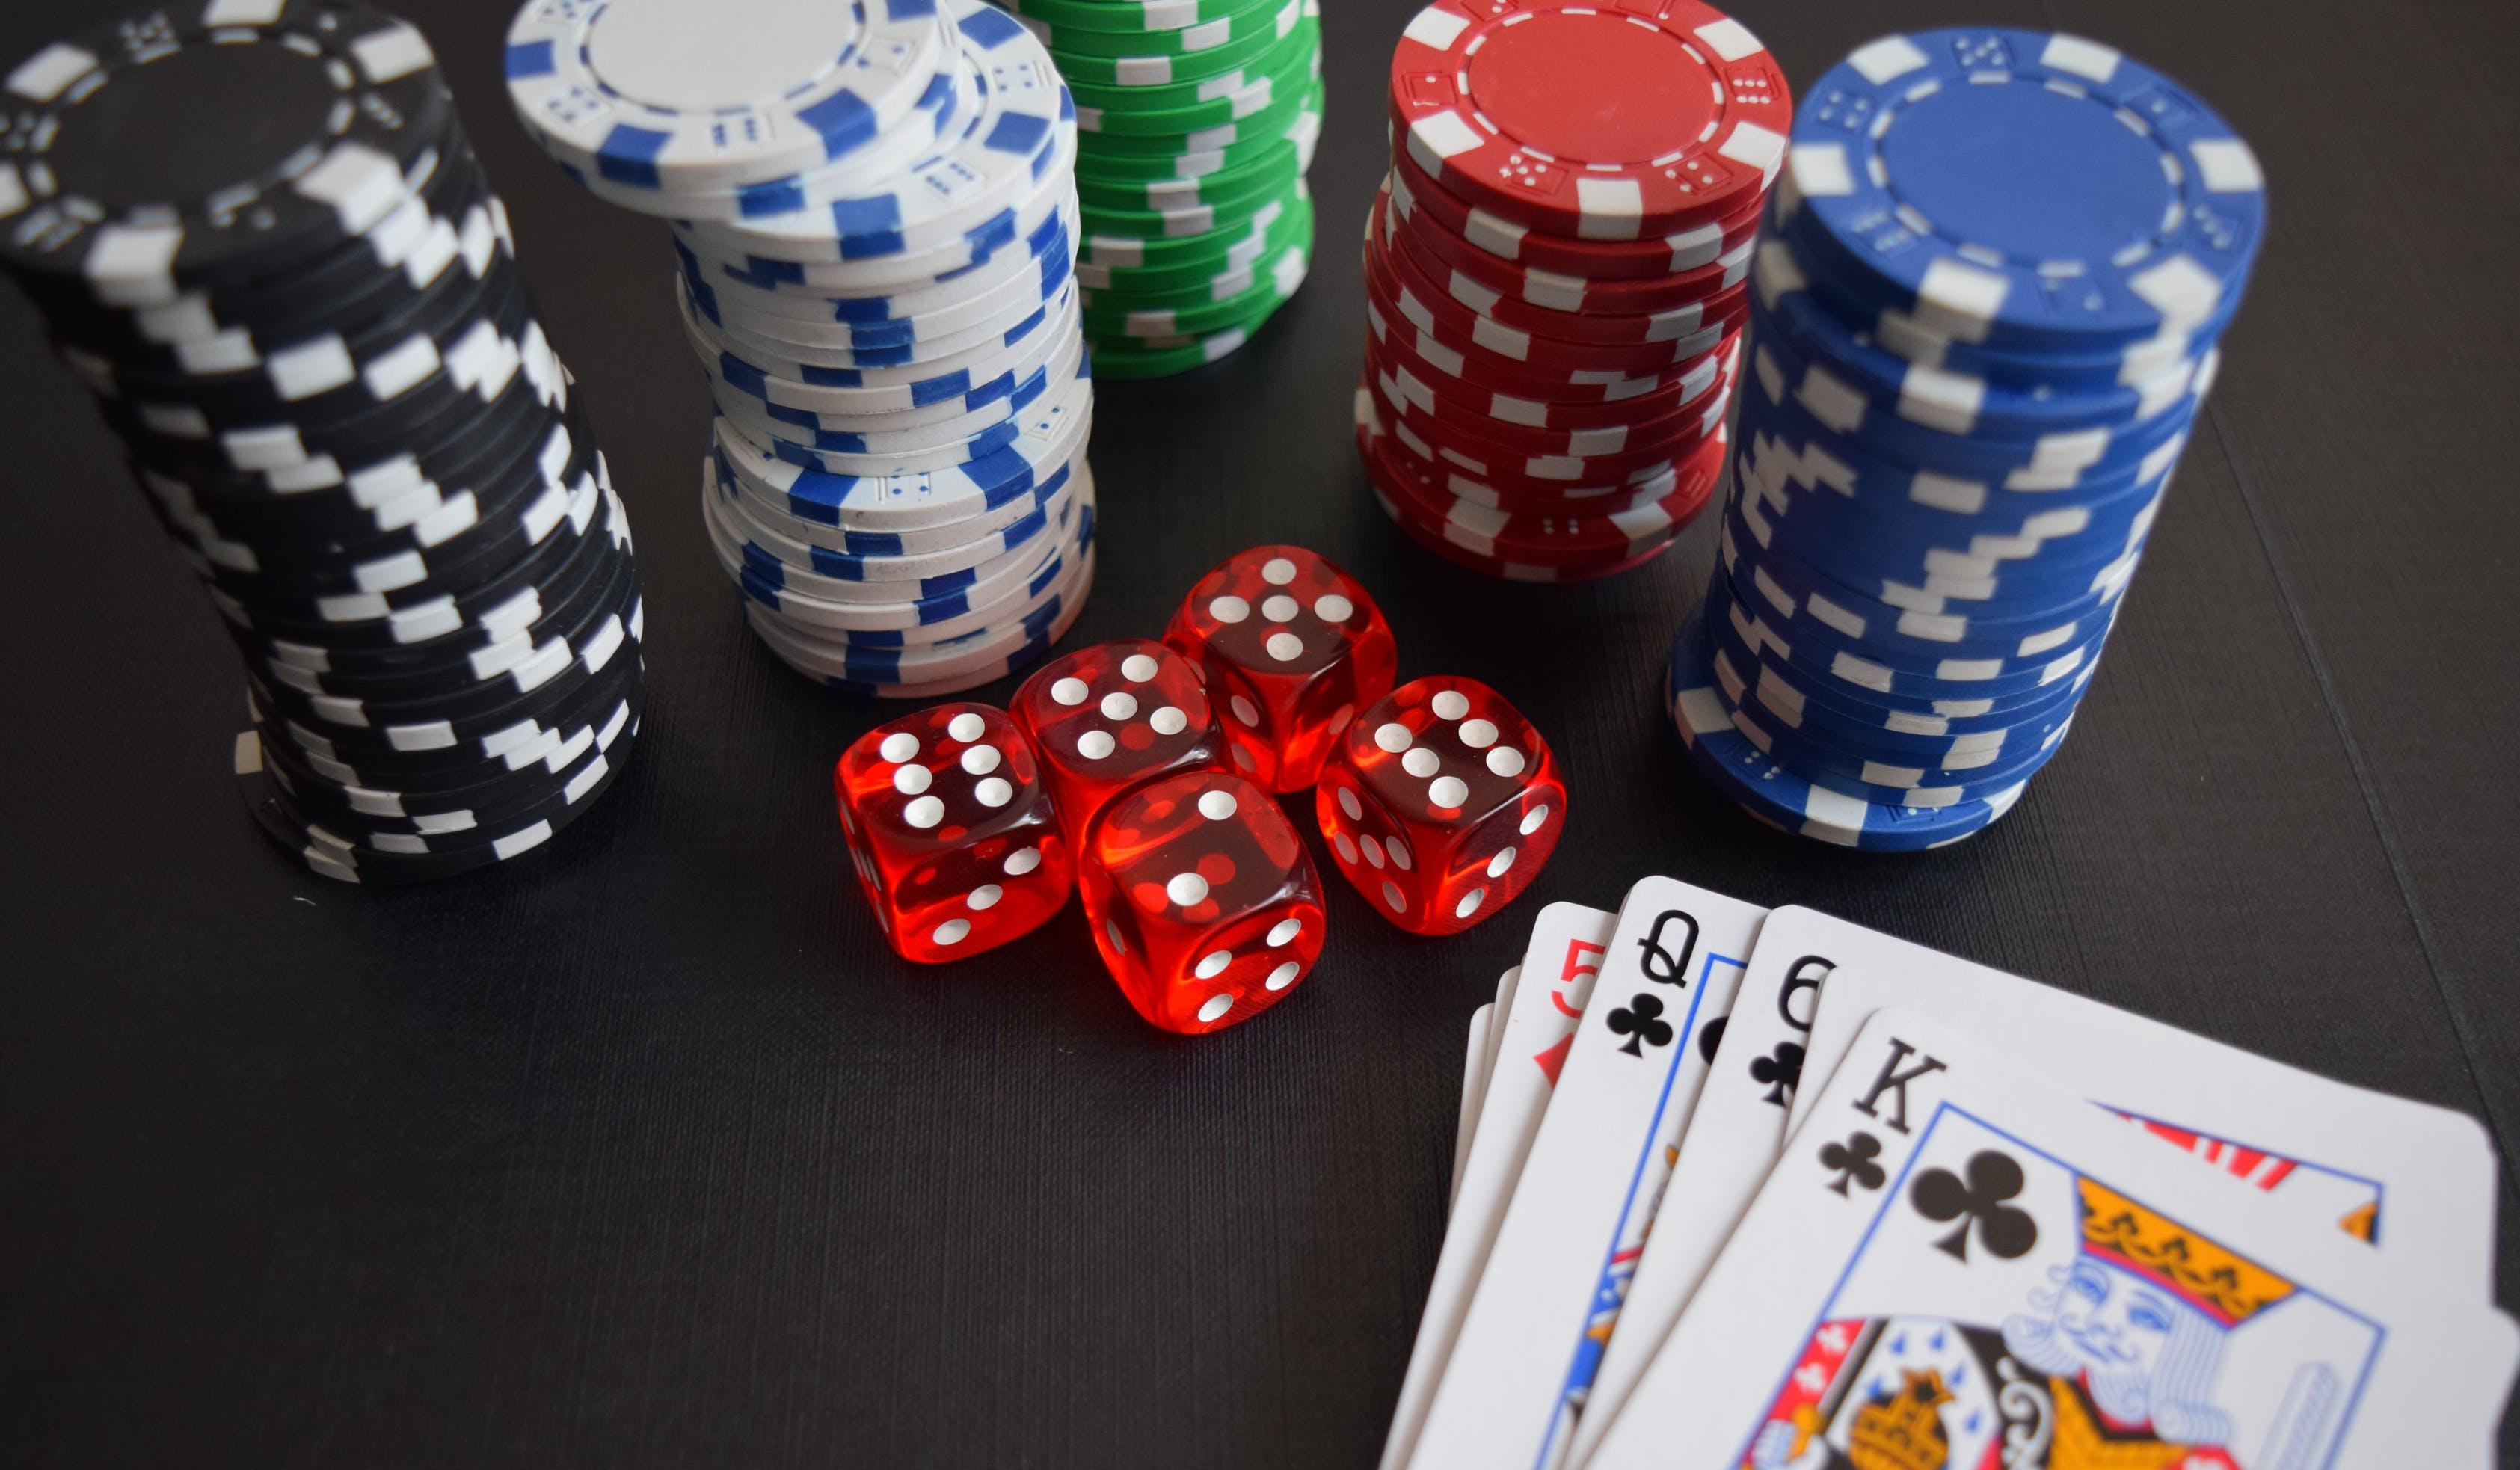 Žetoni, karte in kocke, ki se jih uporablja v casinoju.